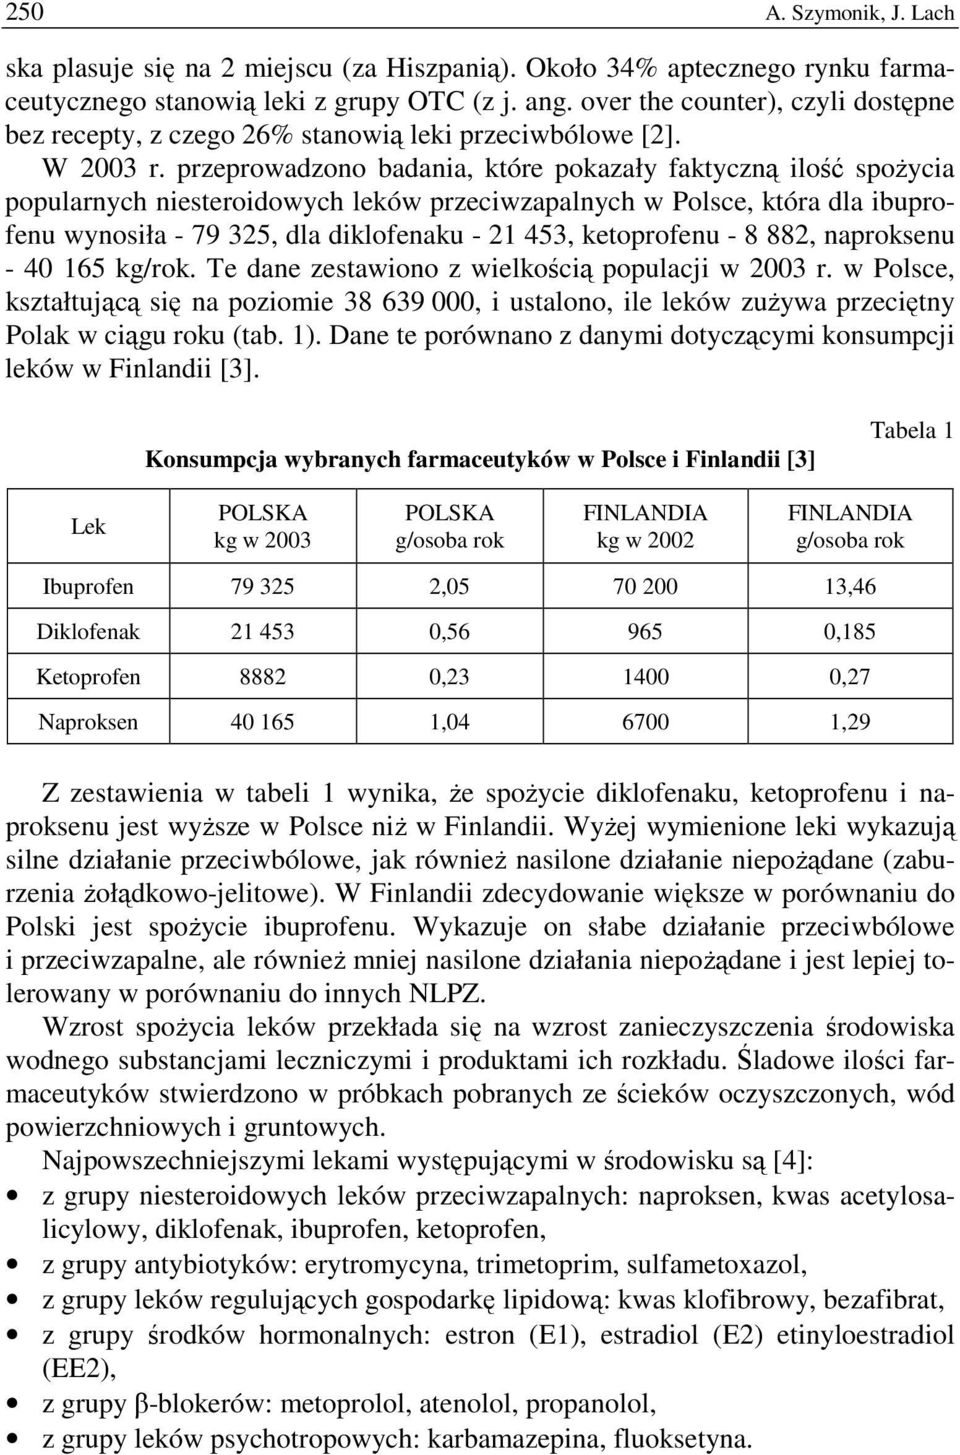 przeprowadzono badania, które pokazały faktyczną ilość spoŝycia popularnych niesteroidowych leków przeciwzapalnych w Polsce, która dla ibuprofenu wynosiła - 79 325, dla diklofenaku - 21 453,